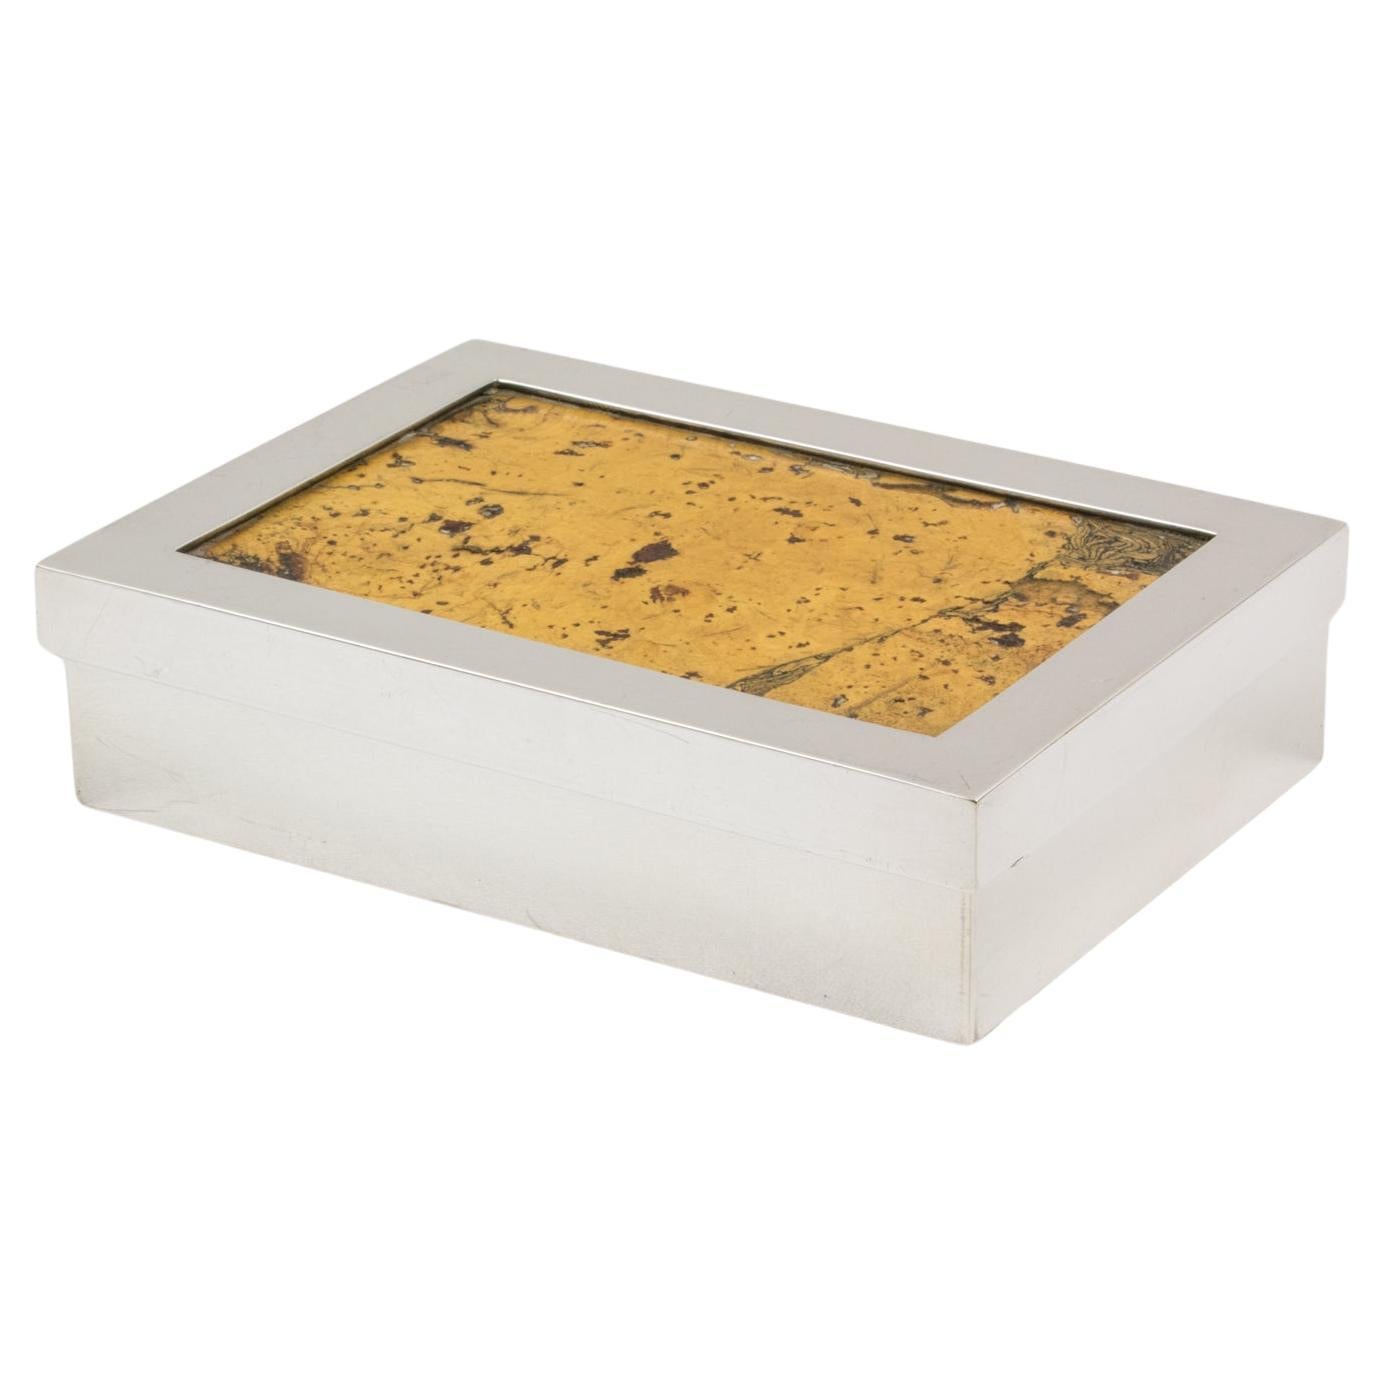 Debladis Paris Art Deco Silver Plate and Cork Decorative Box, 1940s For Sale